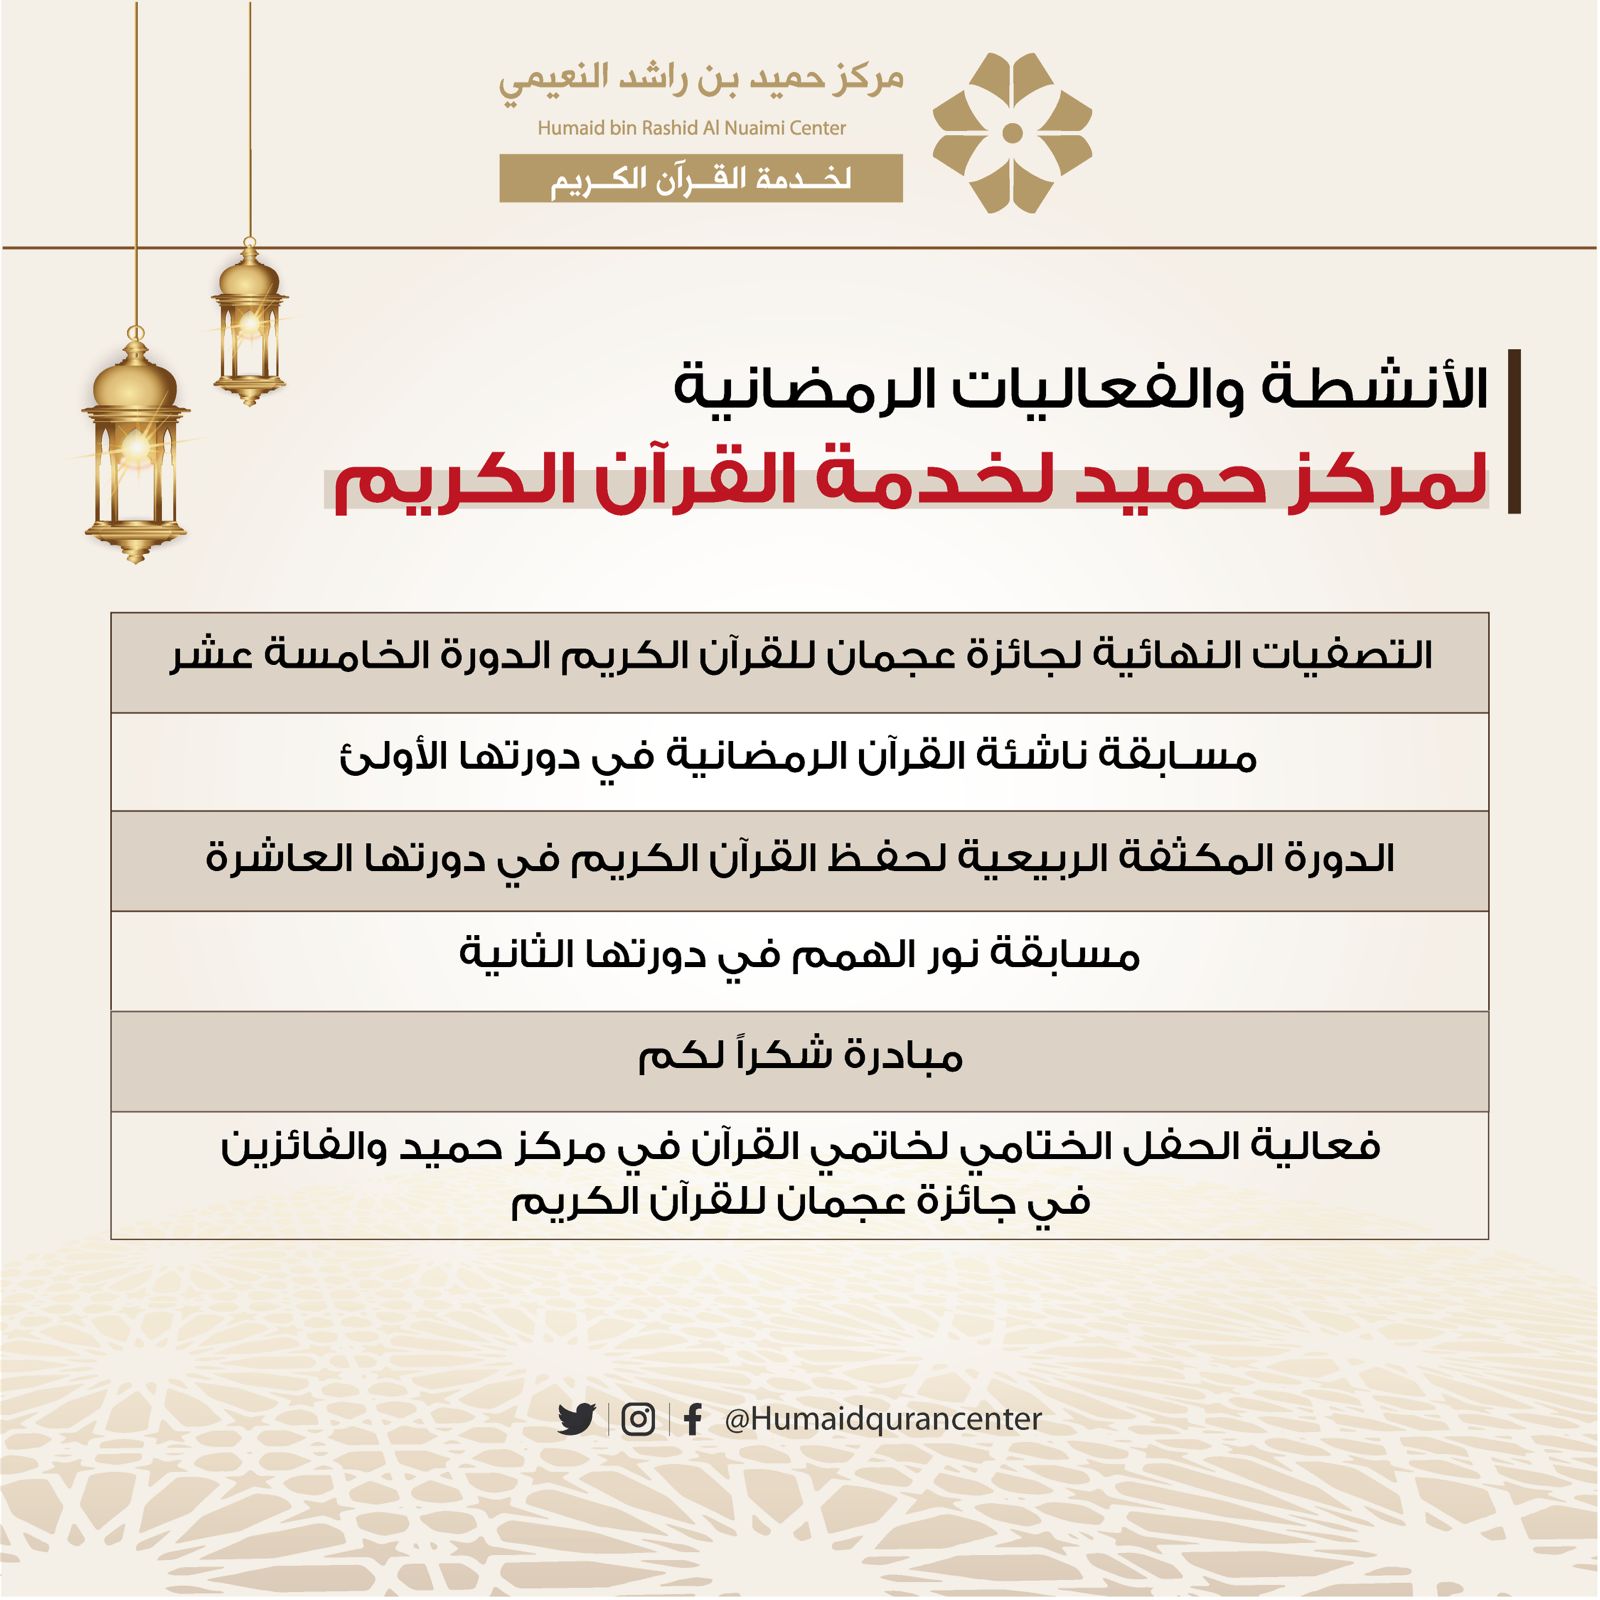 مركز حميد بن راشد لخدمة القرآن الكريم ينظم باقة متنوعة من الفعاليات الرمضانية